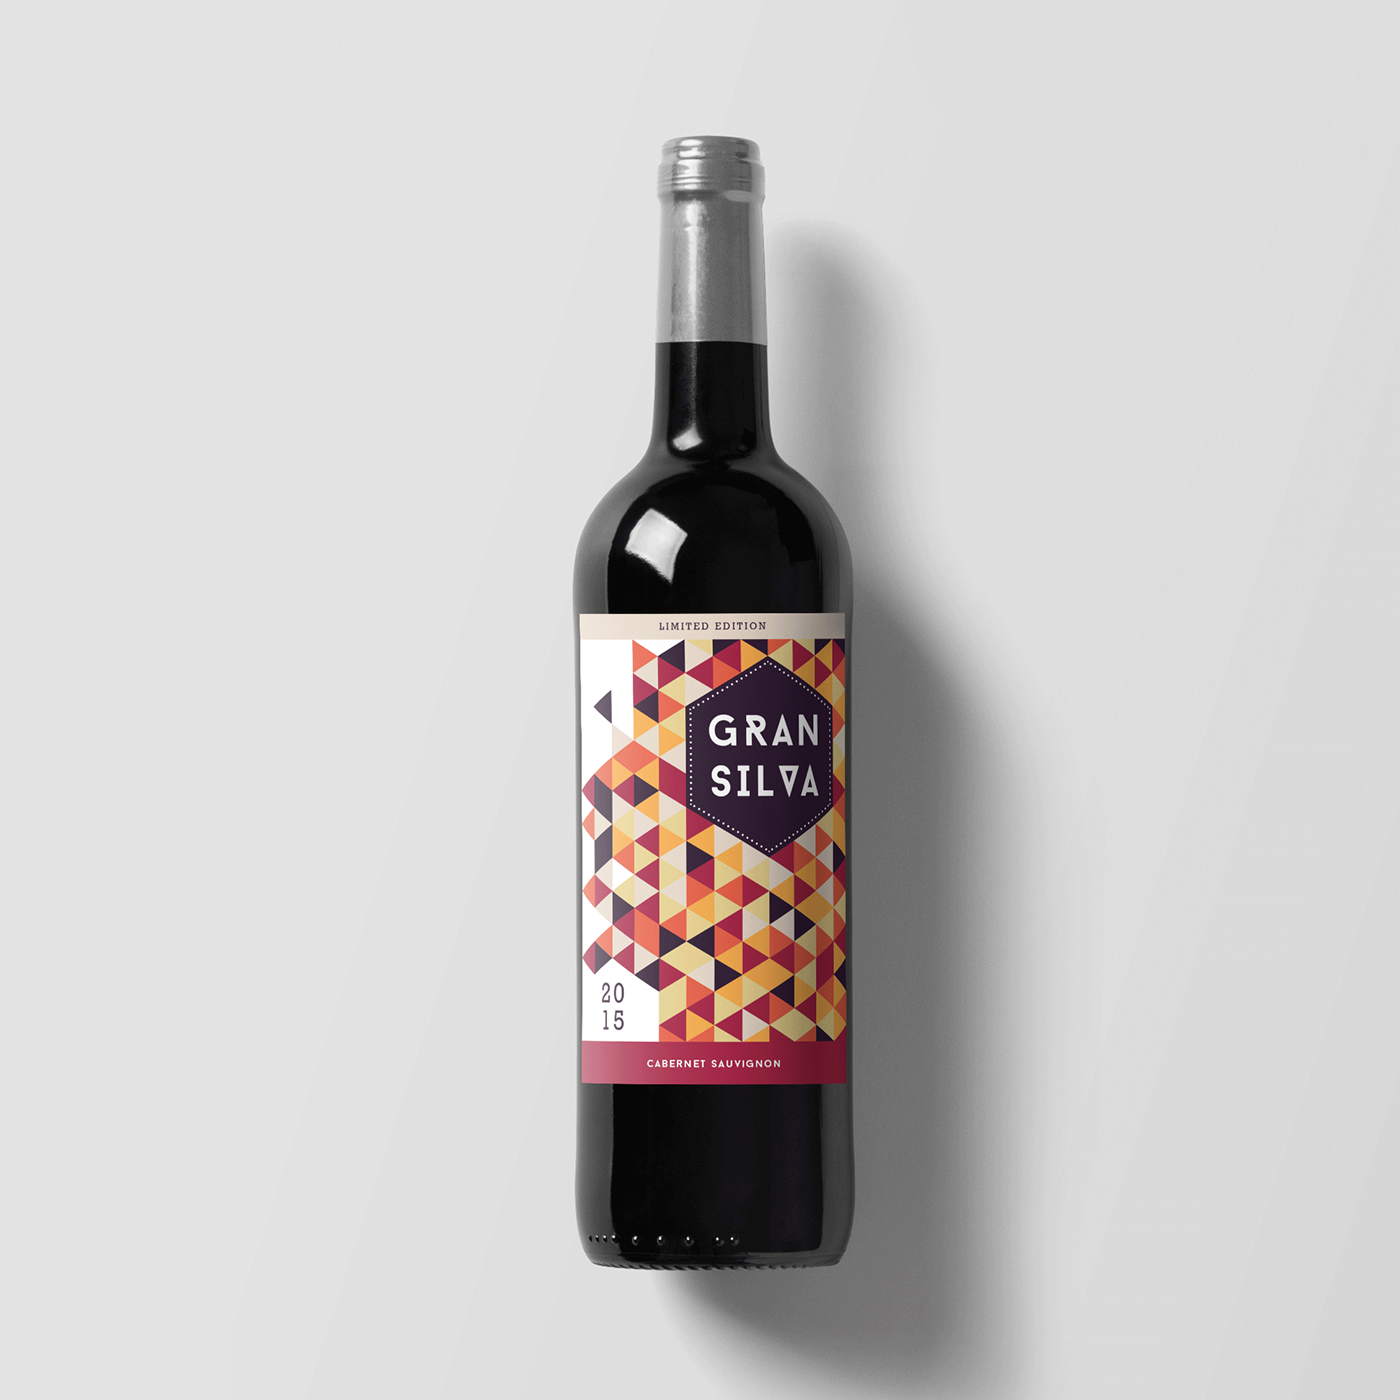 wine Label vino etiqueta grafico diseño bottle botella vineyard spain limited edition edición especial